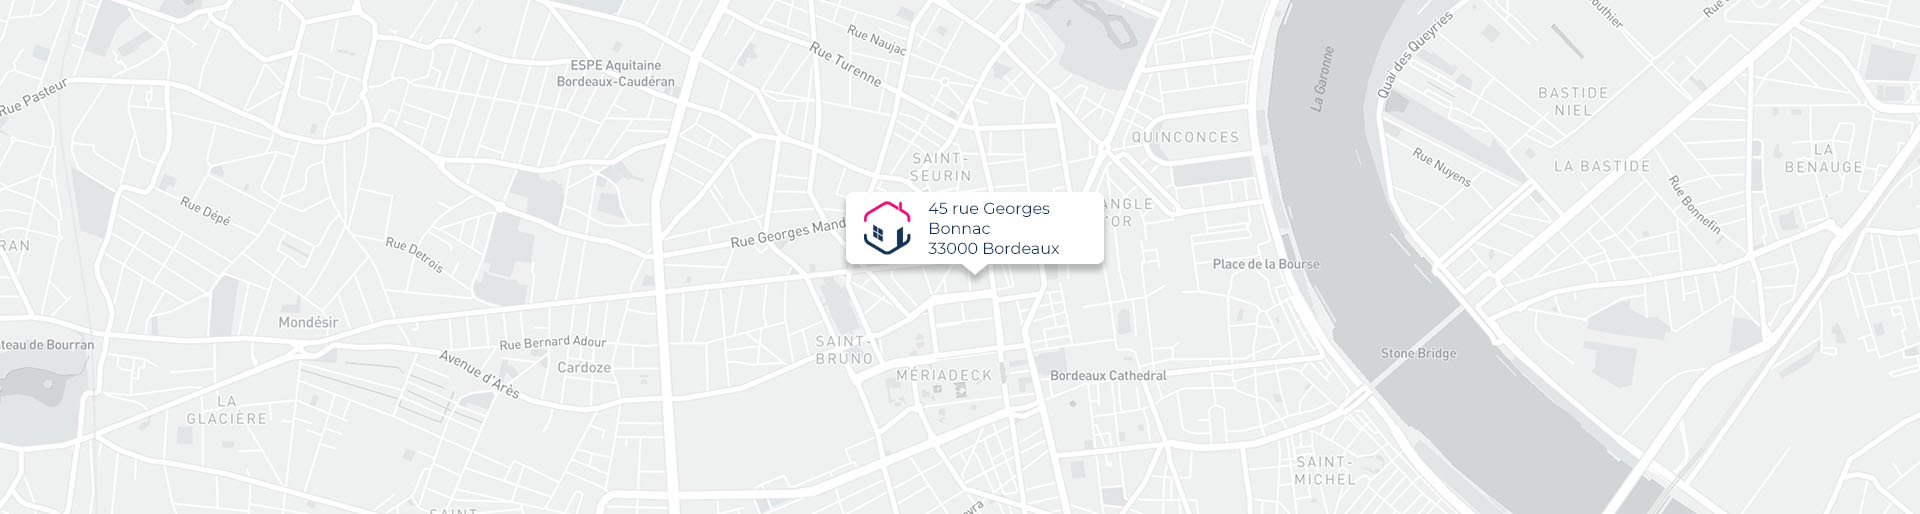 Plan de l'agence de Bordeaux IMMO9 située 45, rue Georges Bonnac 33000 Bordeaux tel: tel:0535548233